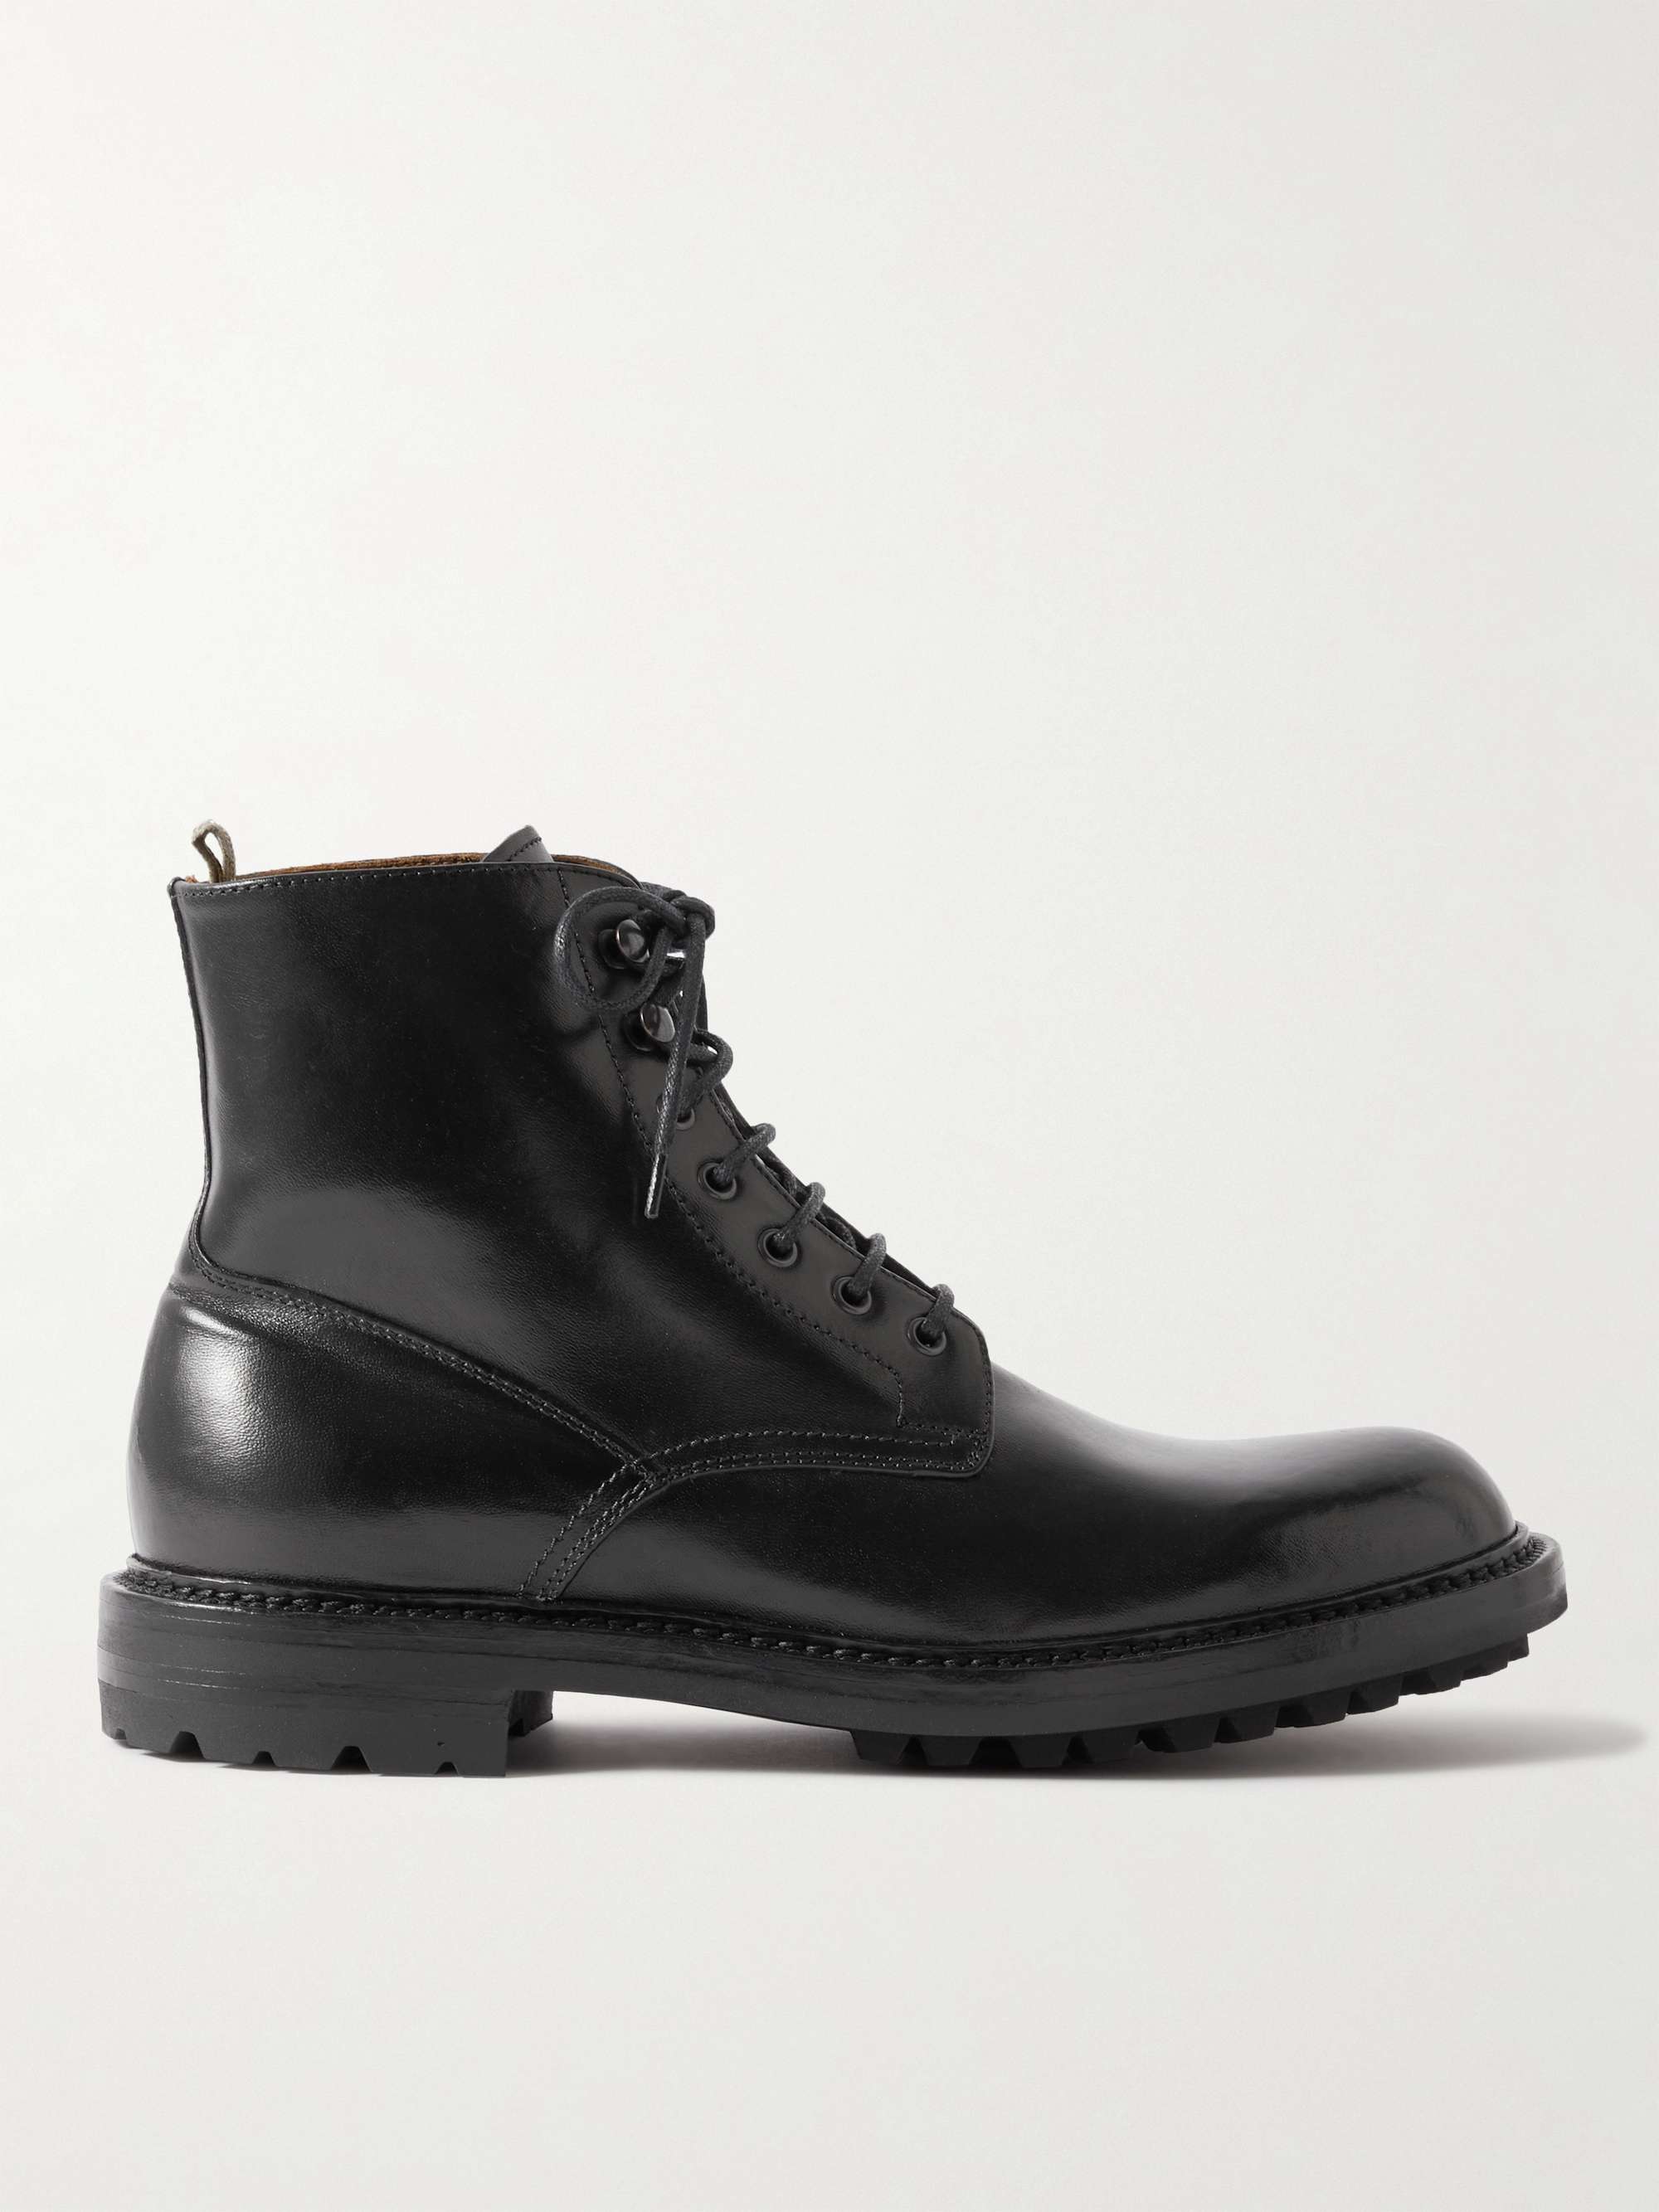 OFFICINE CREATIVE Bristol Leather Boots for Men | MR PORTER